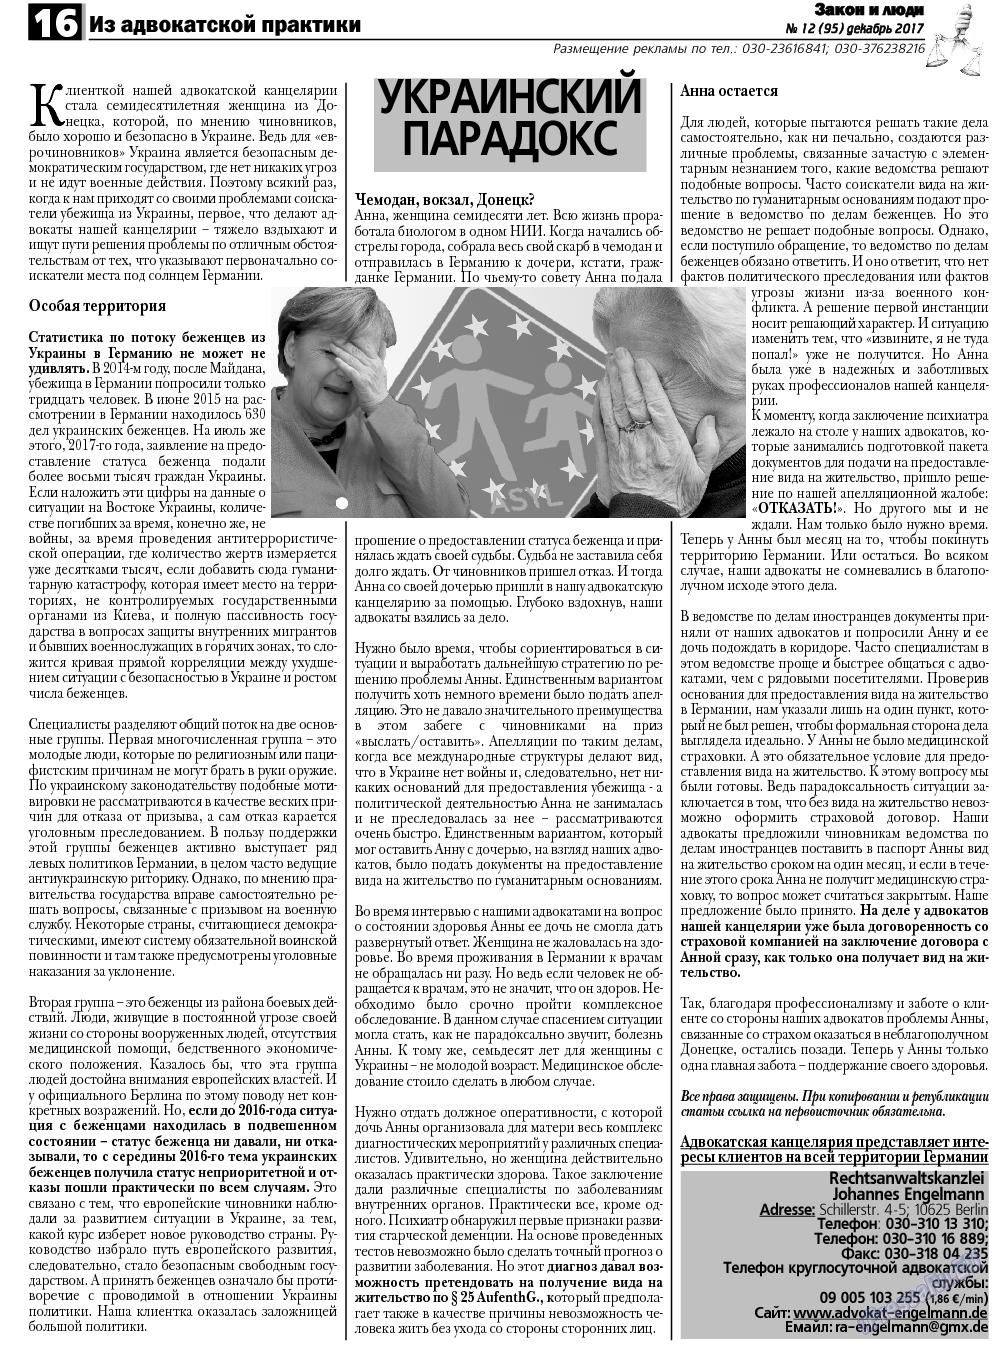 Закон и люди, газета. 2017 №12 стр.16